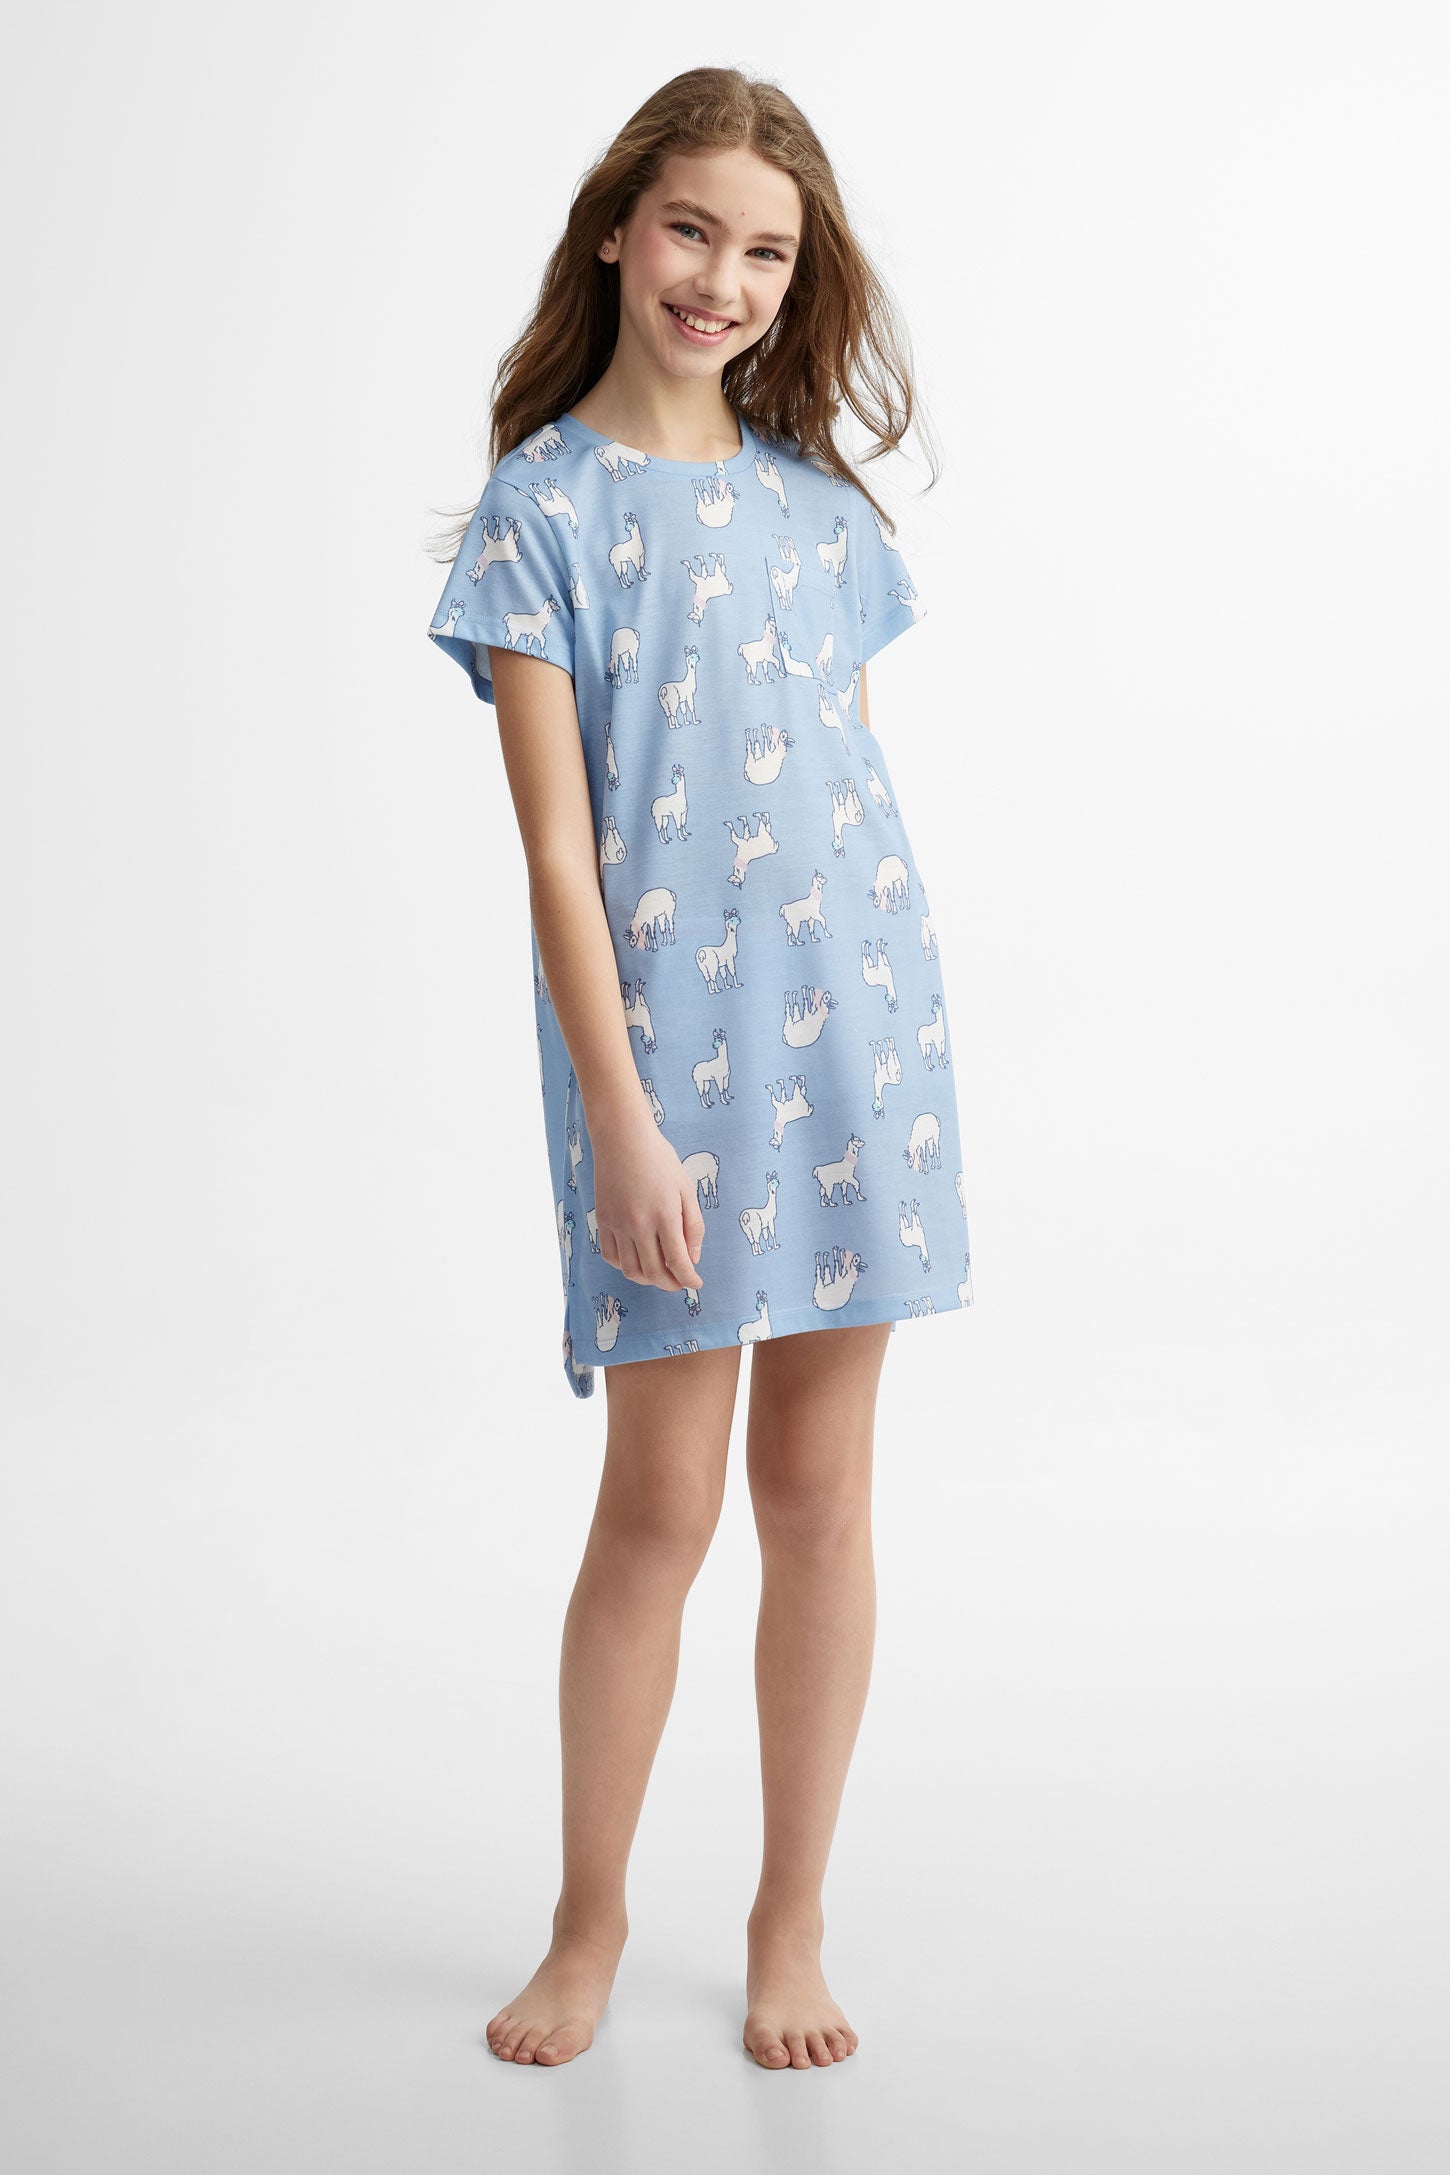 Robe de nuit pyjama assorti famille, 2/40$ - Ado fille
 && BLEU MULTI